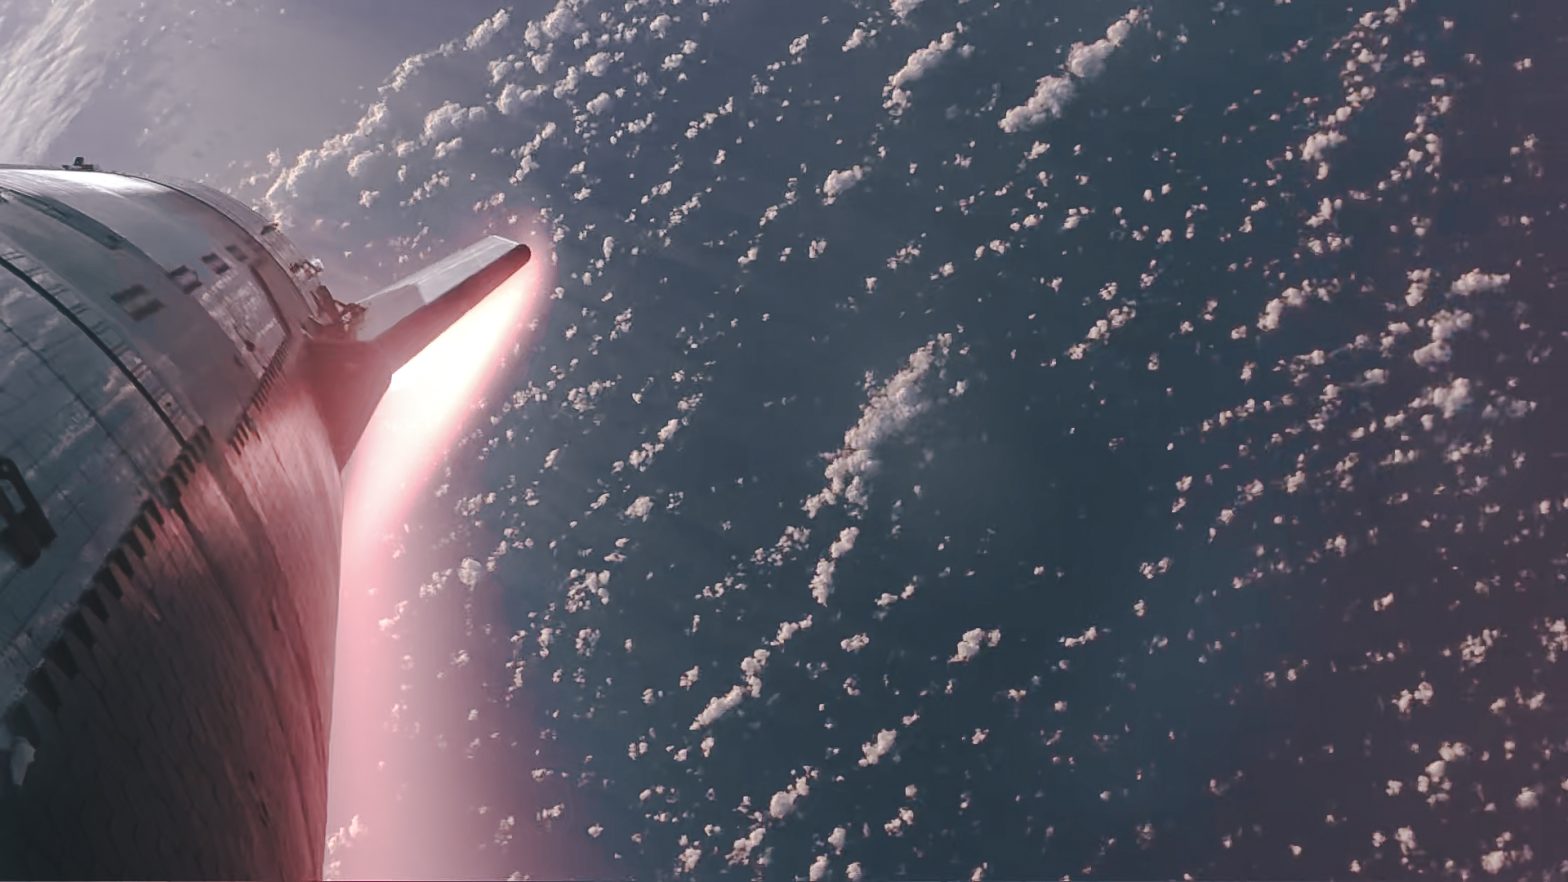 SpaceX ممکن است در سال 2027 عمومی شود به یکی از بزرگترین سرمایه گذاران خود، ران بارون اشاره می کند